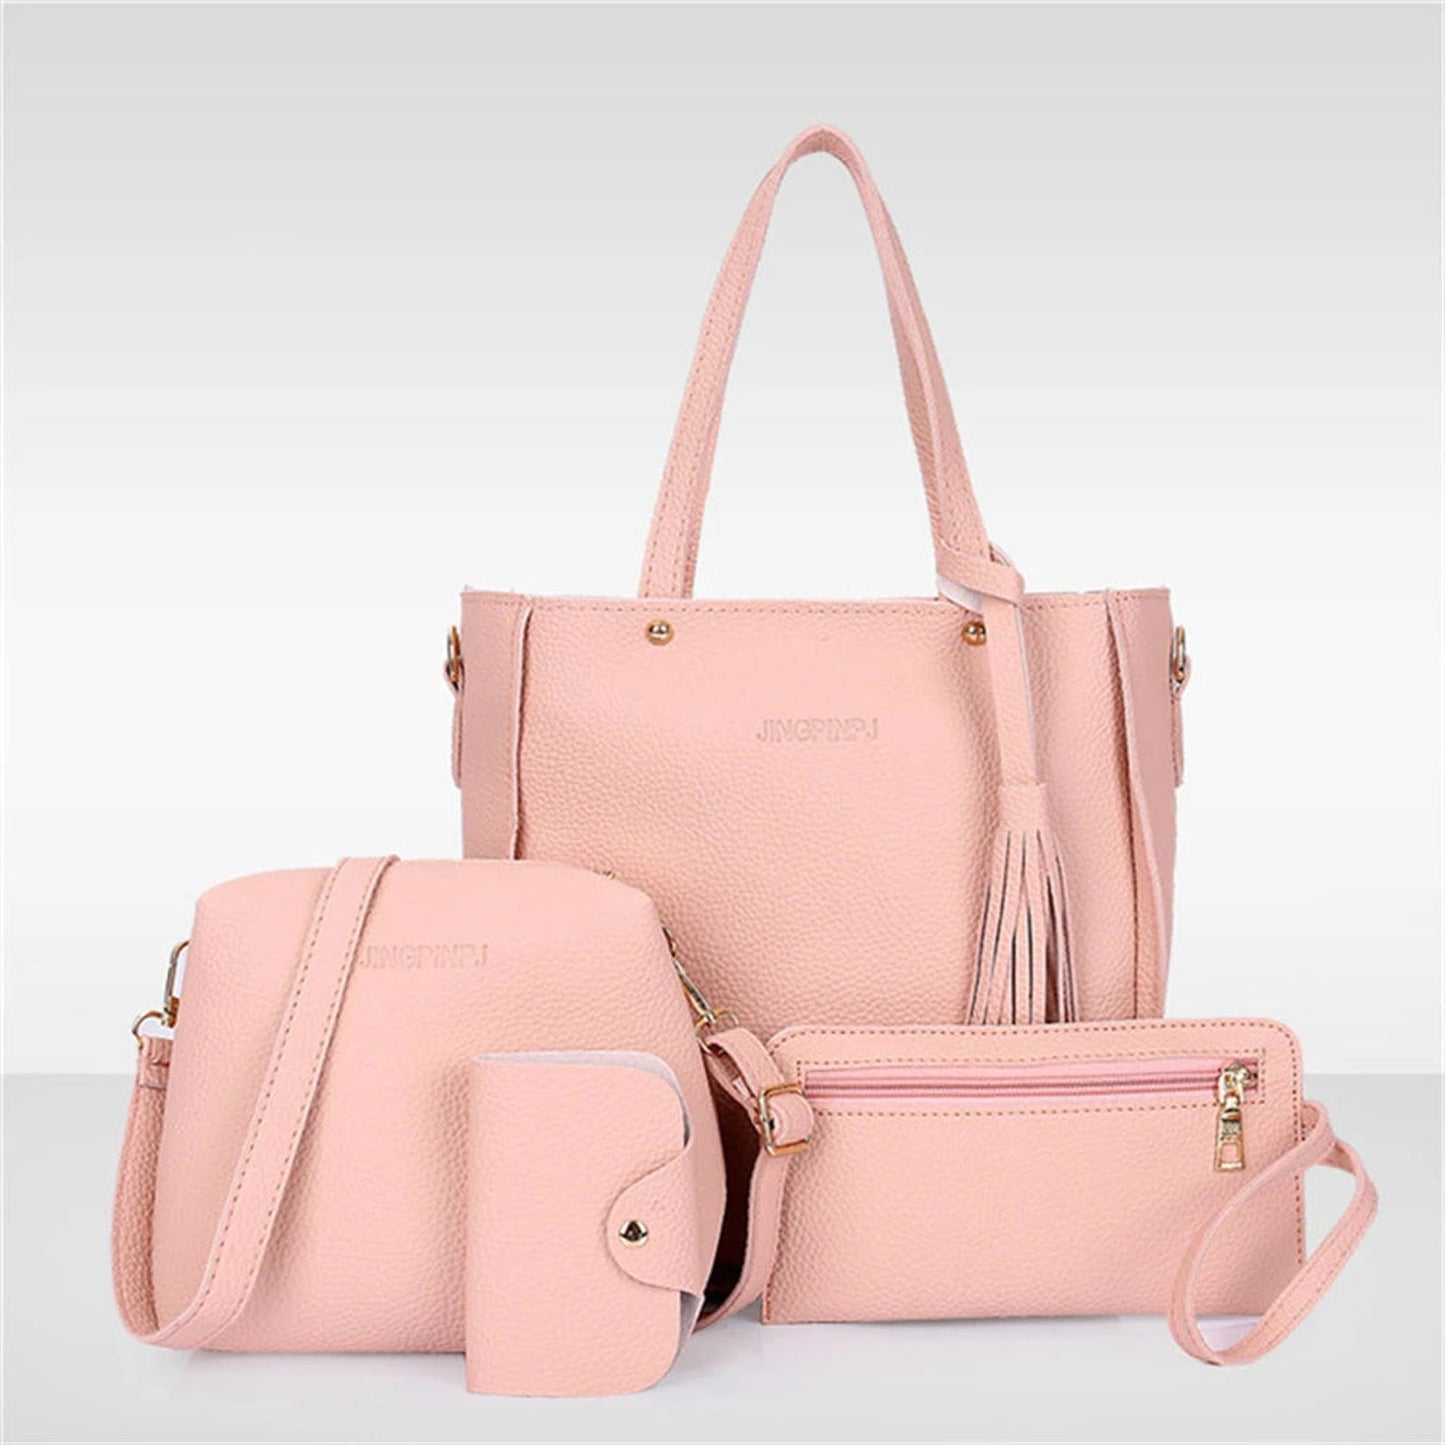 4pcs Set Women Pu Leather Handbag Fashionable Shoulder Purses Ladies Purse Messenger Satchel Wallet Bags New - ARCHE